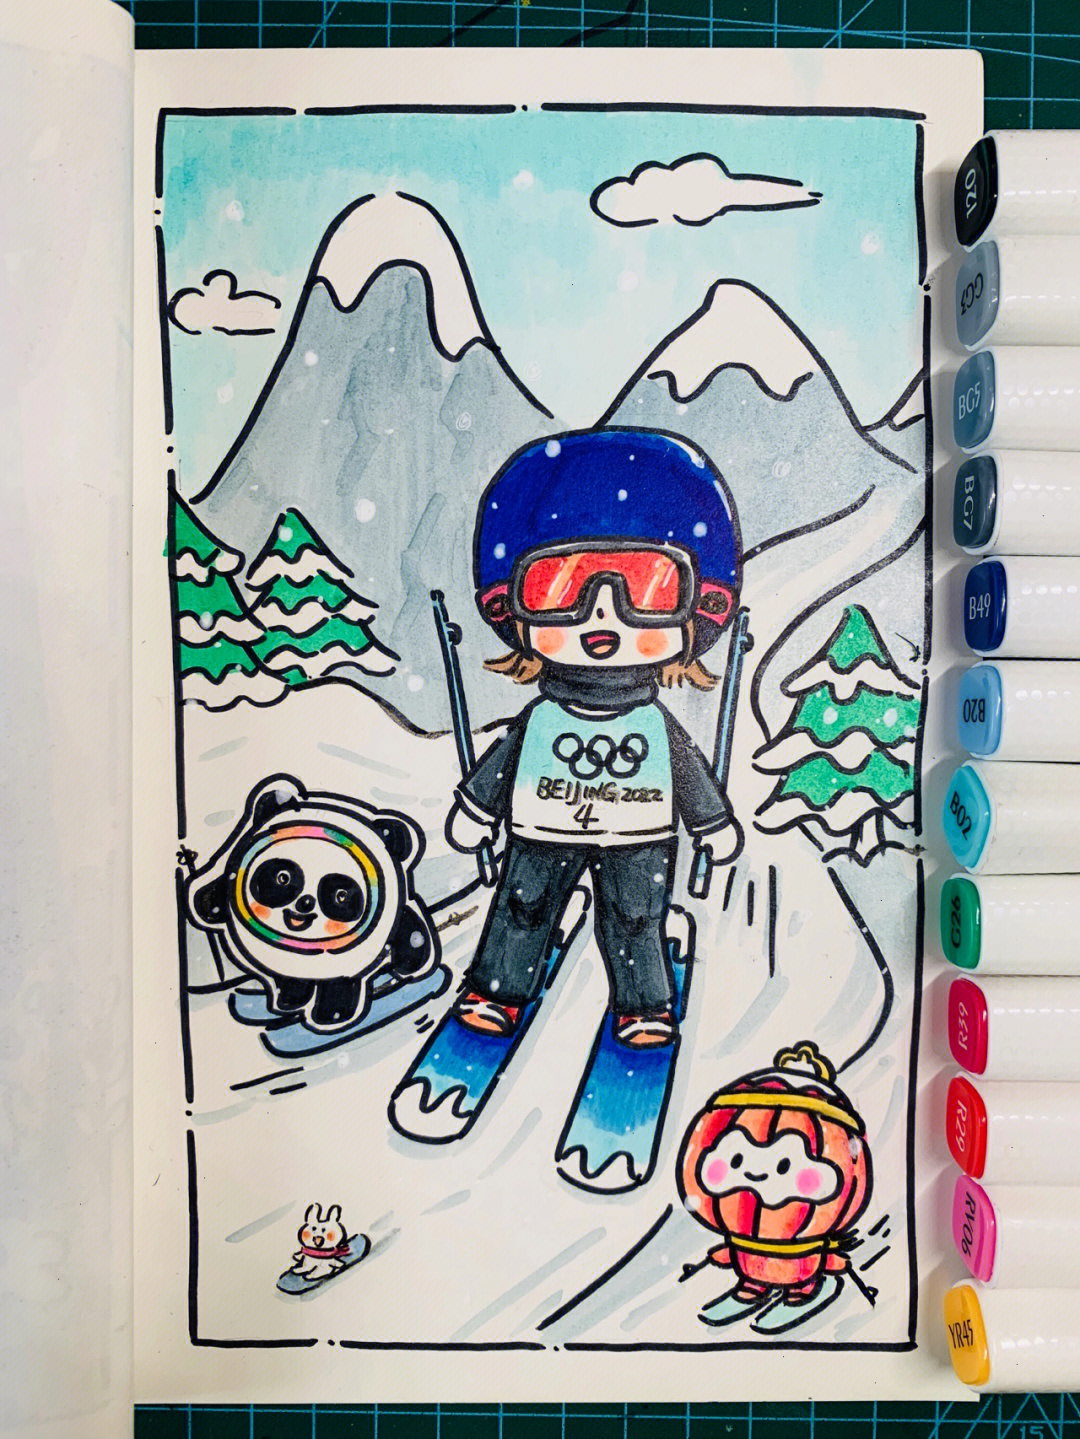 滑雪动漫绘画图片